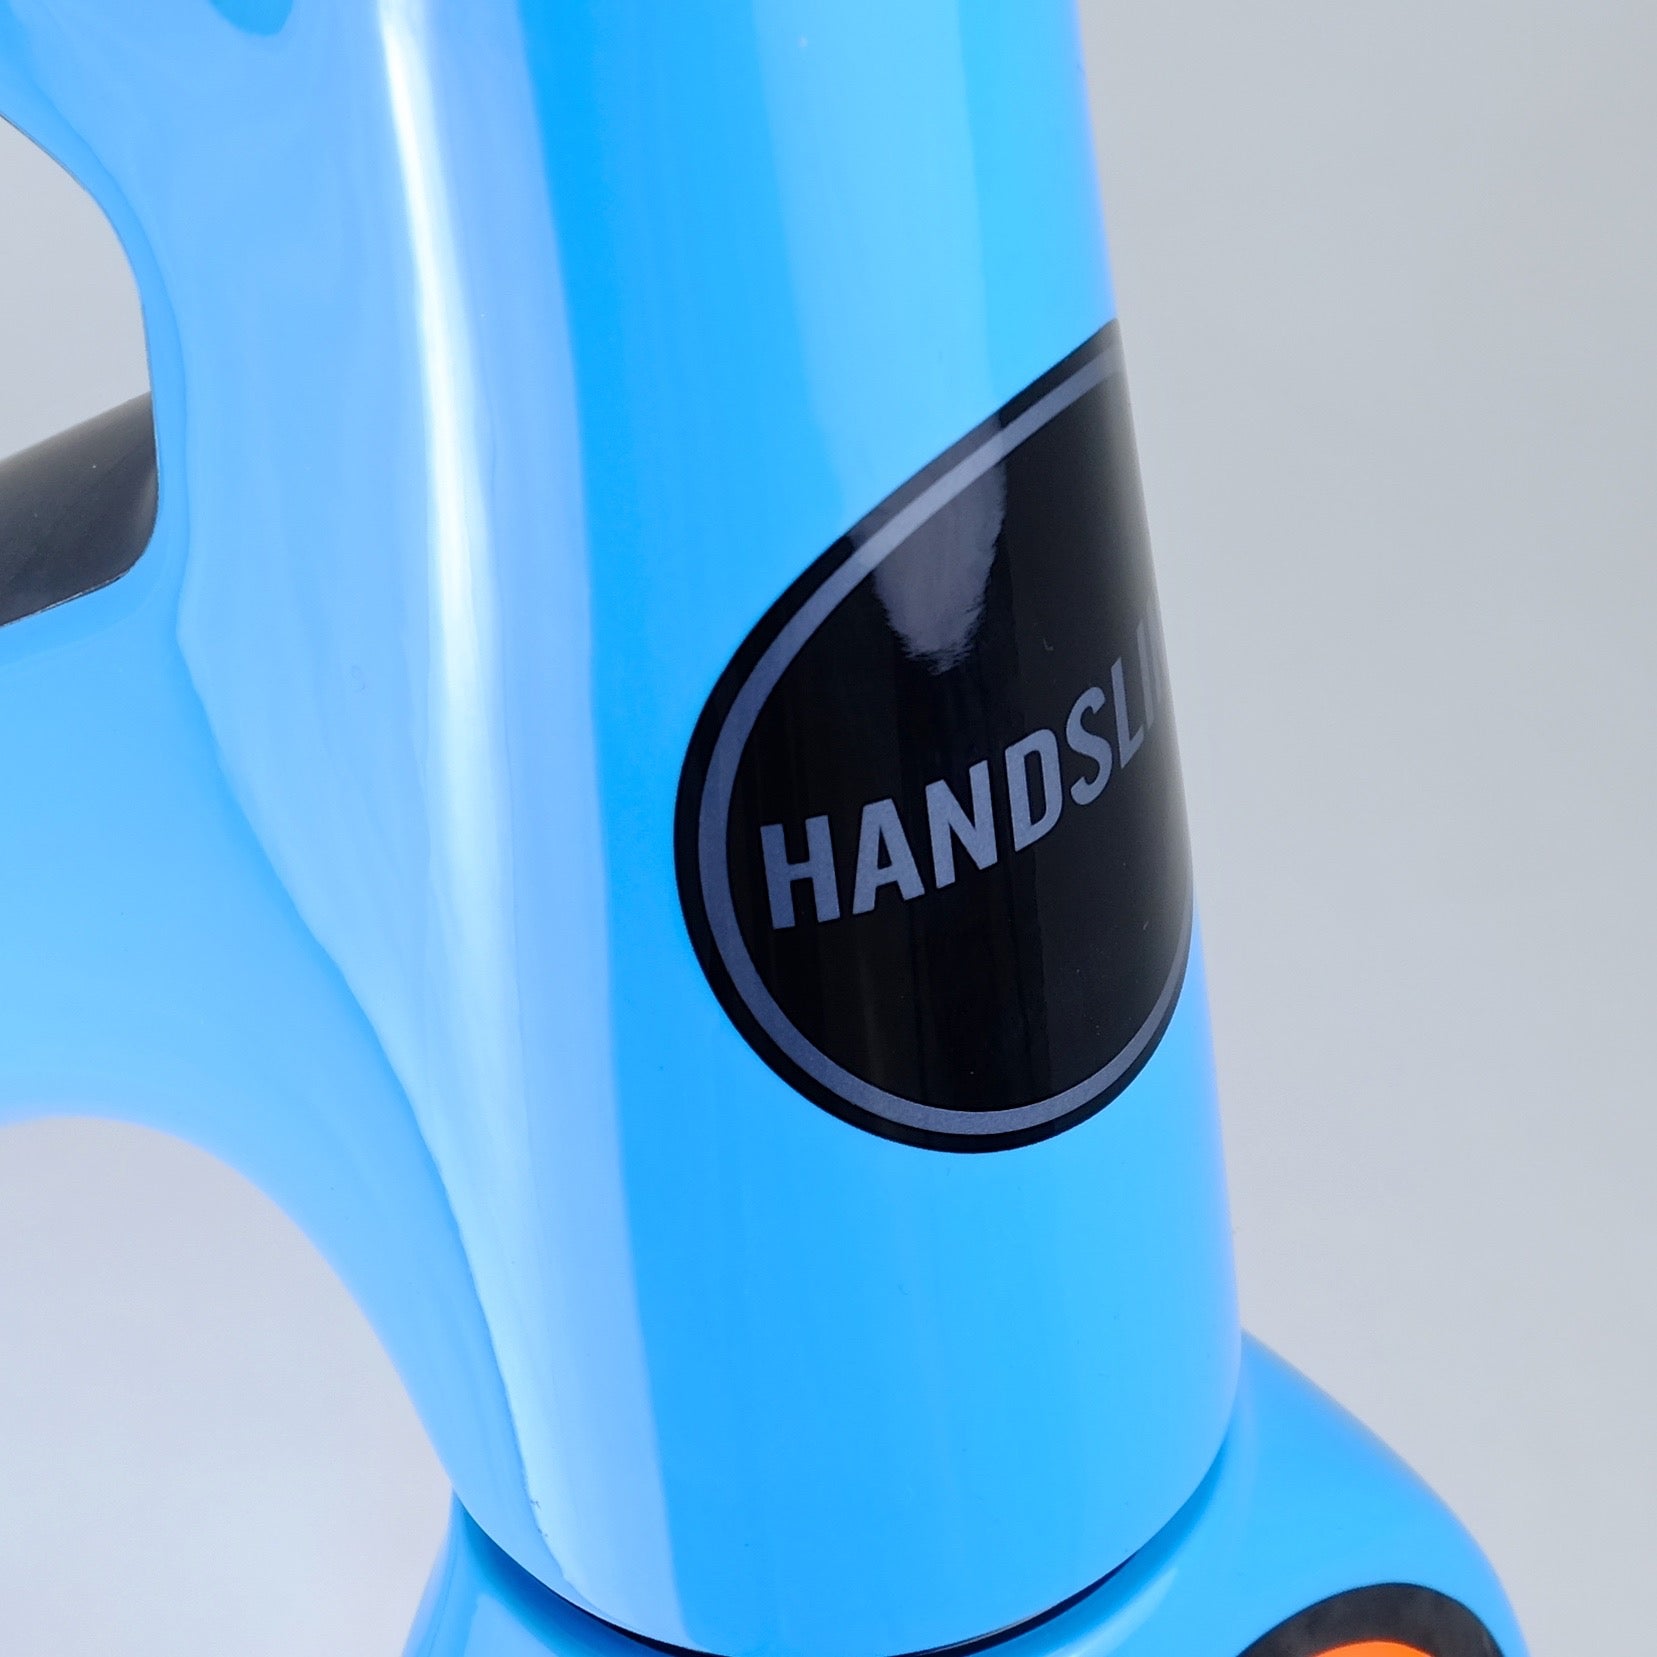 Handsling A1R0evo frame - Team Blue and Orange